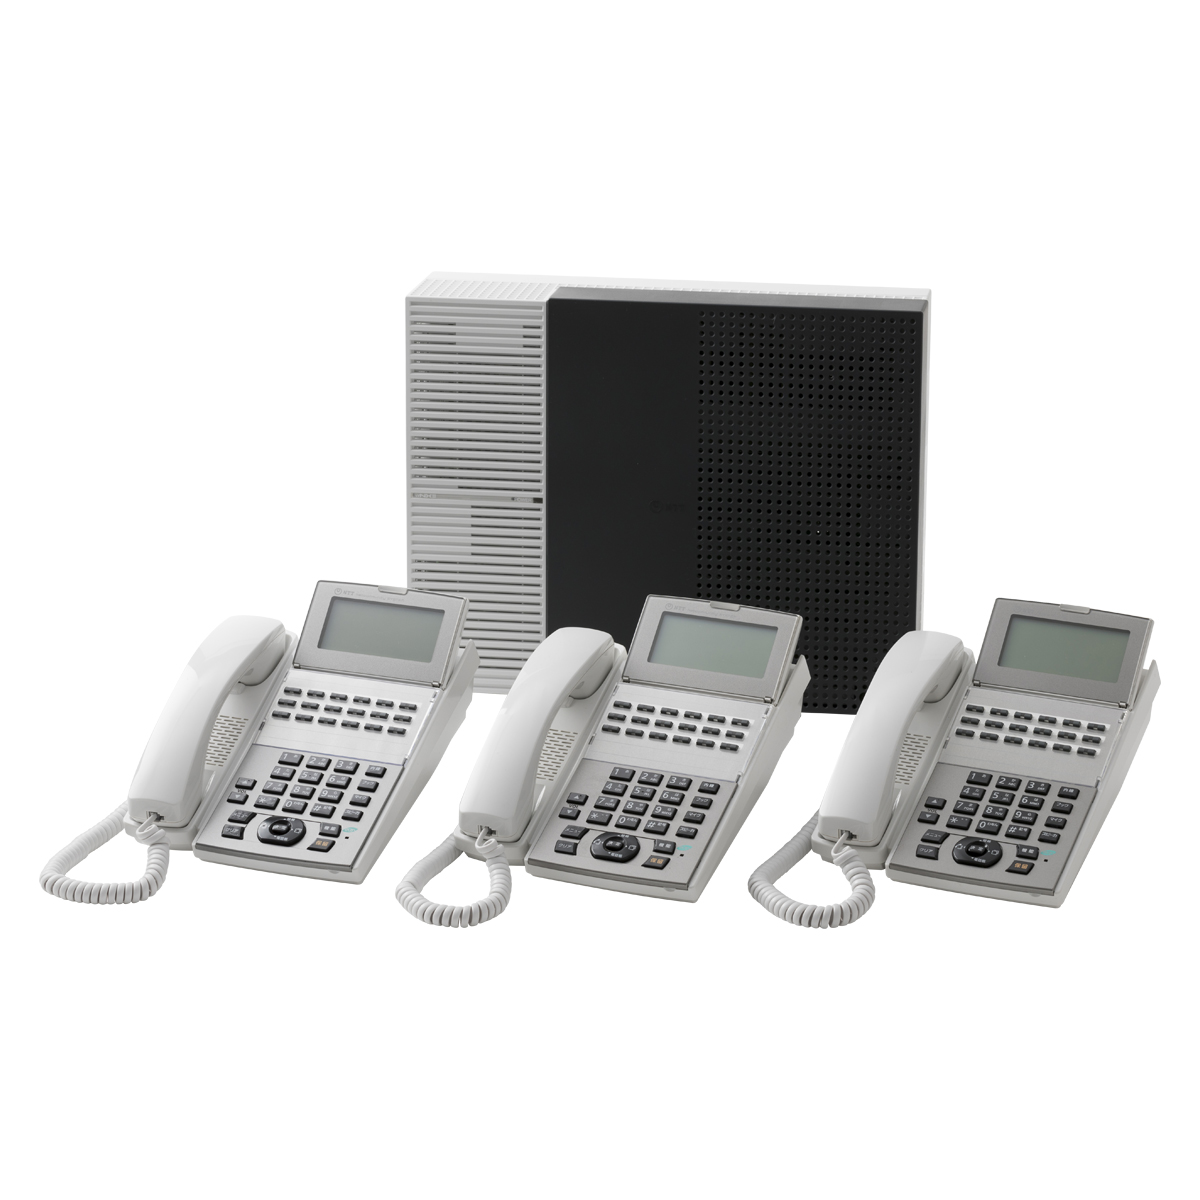 中古ビジネスフォン3台セット NTT NX2 NTT-NX2 通販 事務機器・情報機器・OA機器 オフィス家具のカグクロ